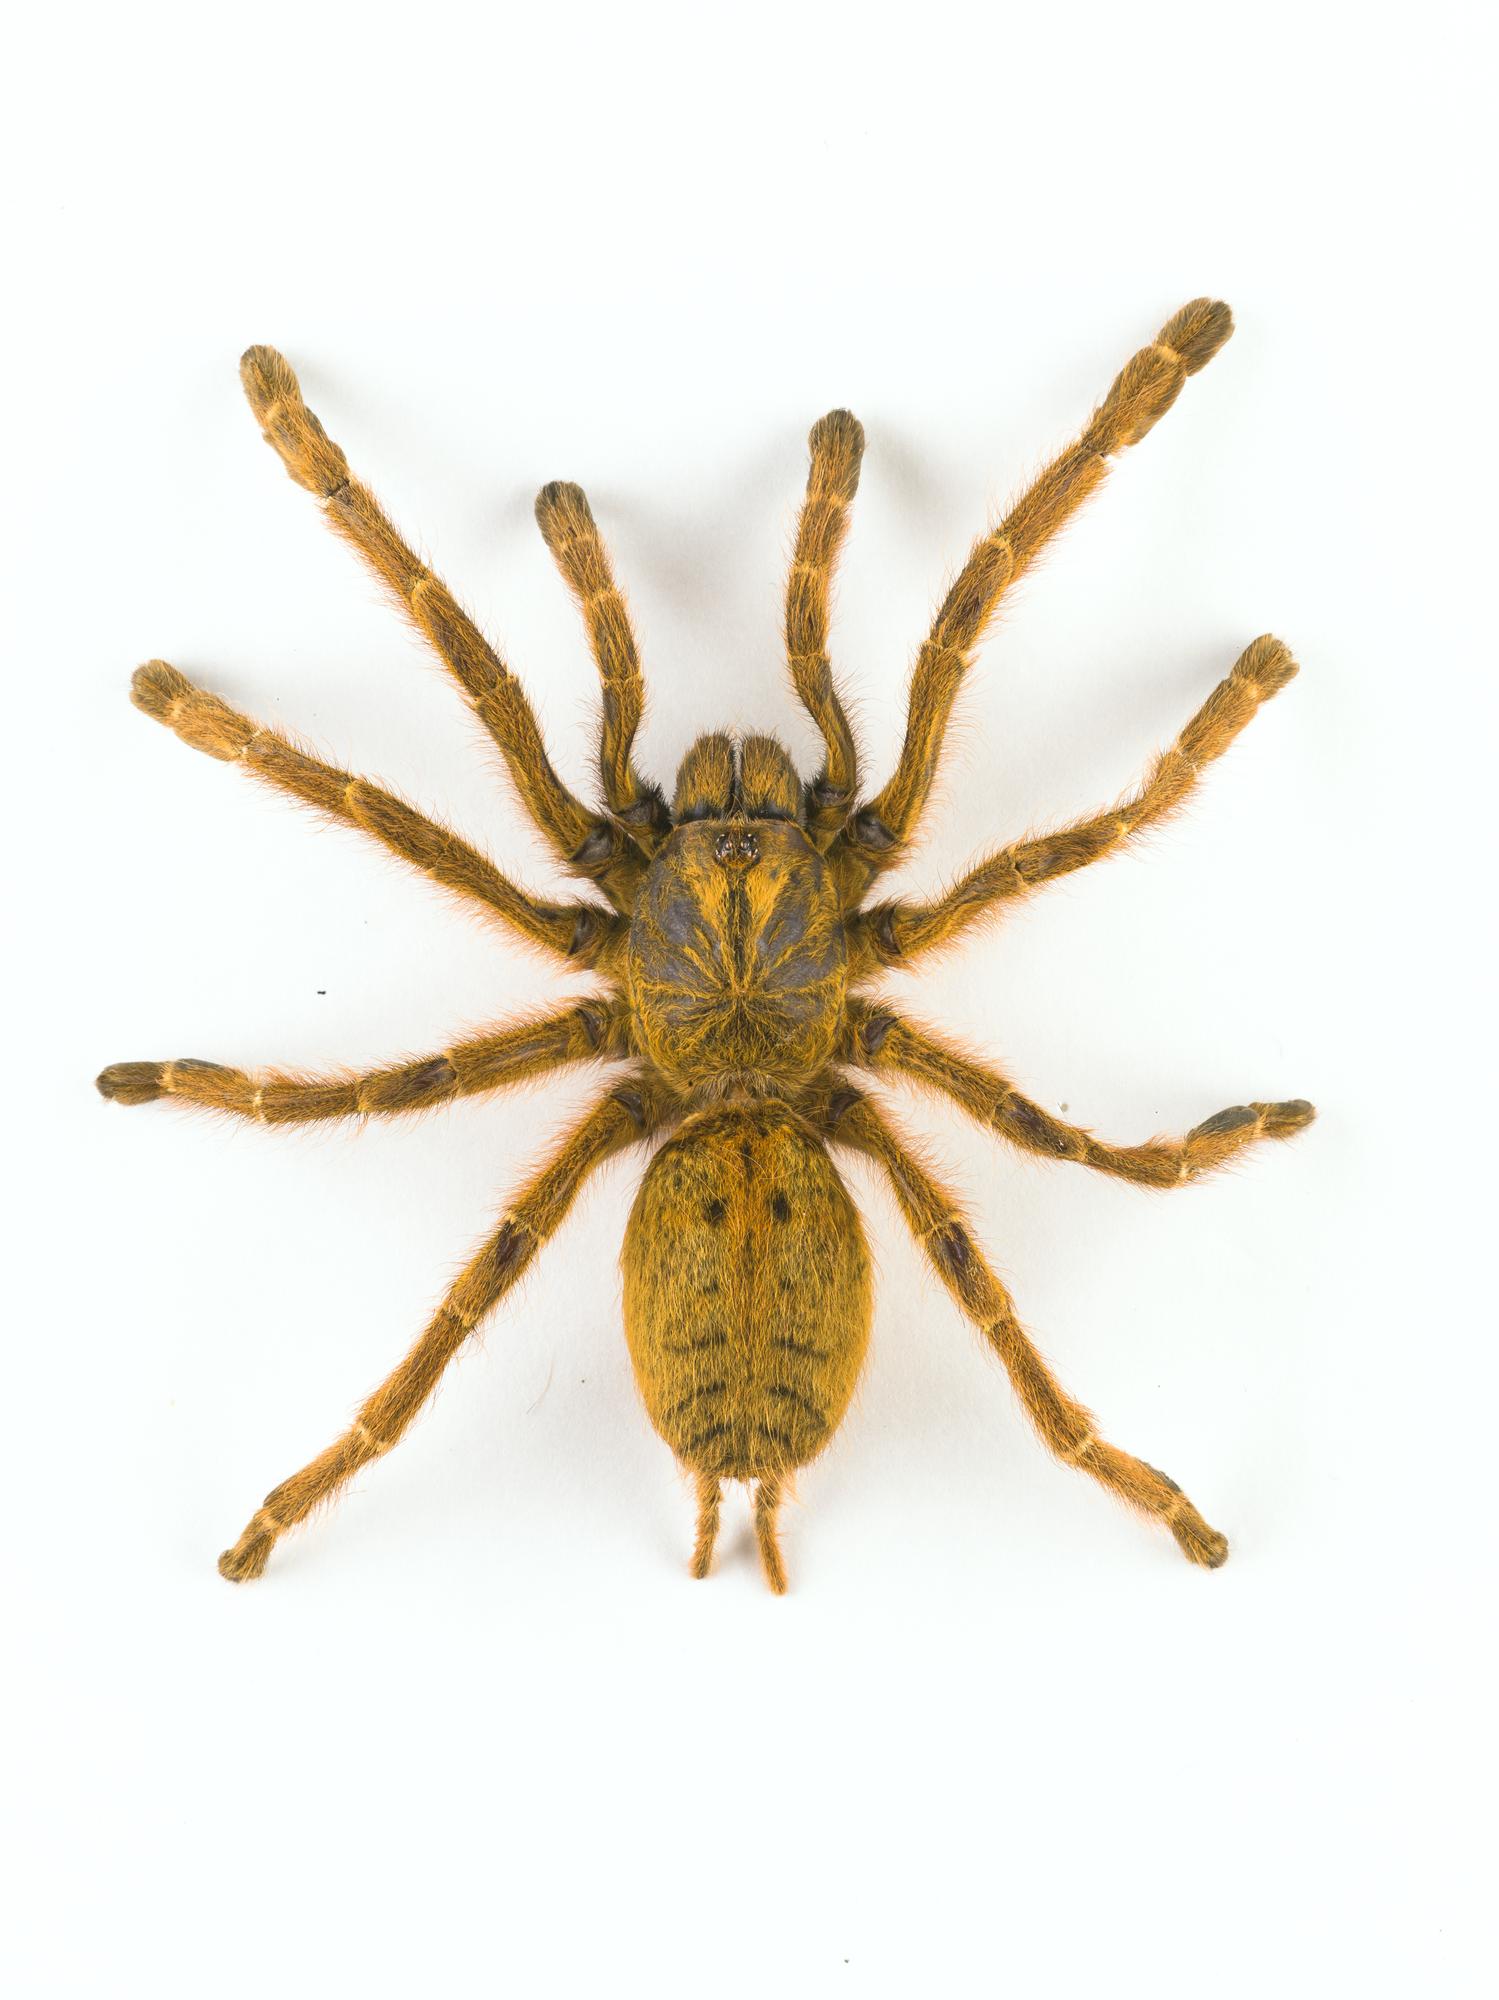 Pterinochilus sp., tarantula, dried specimen 